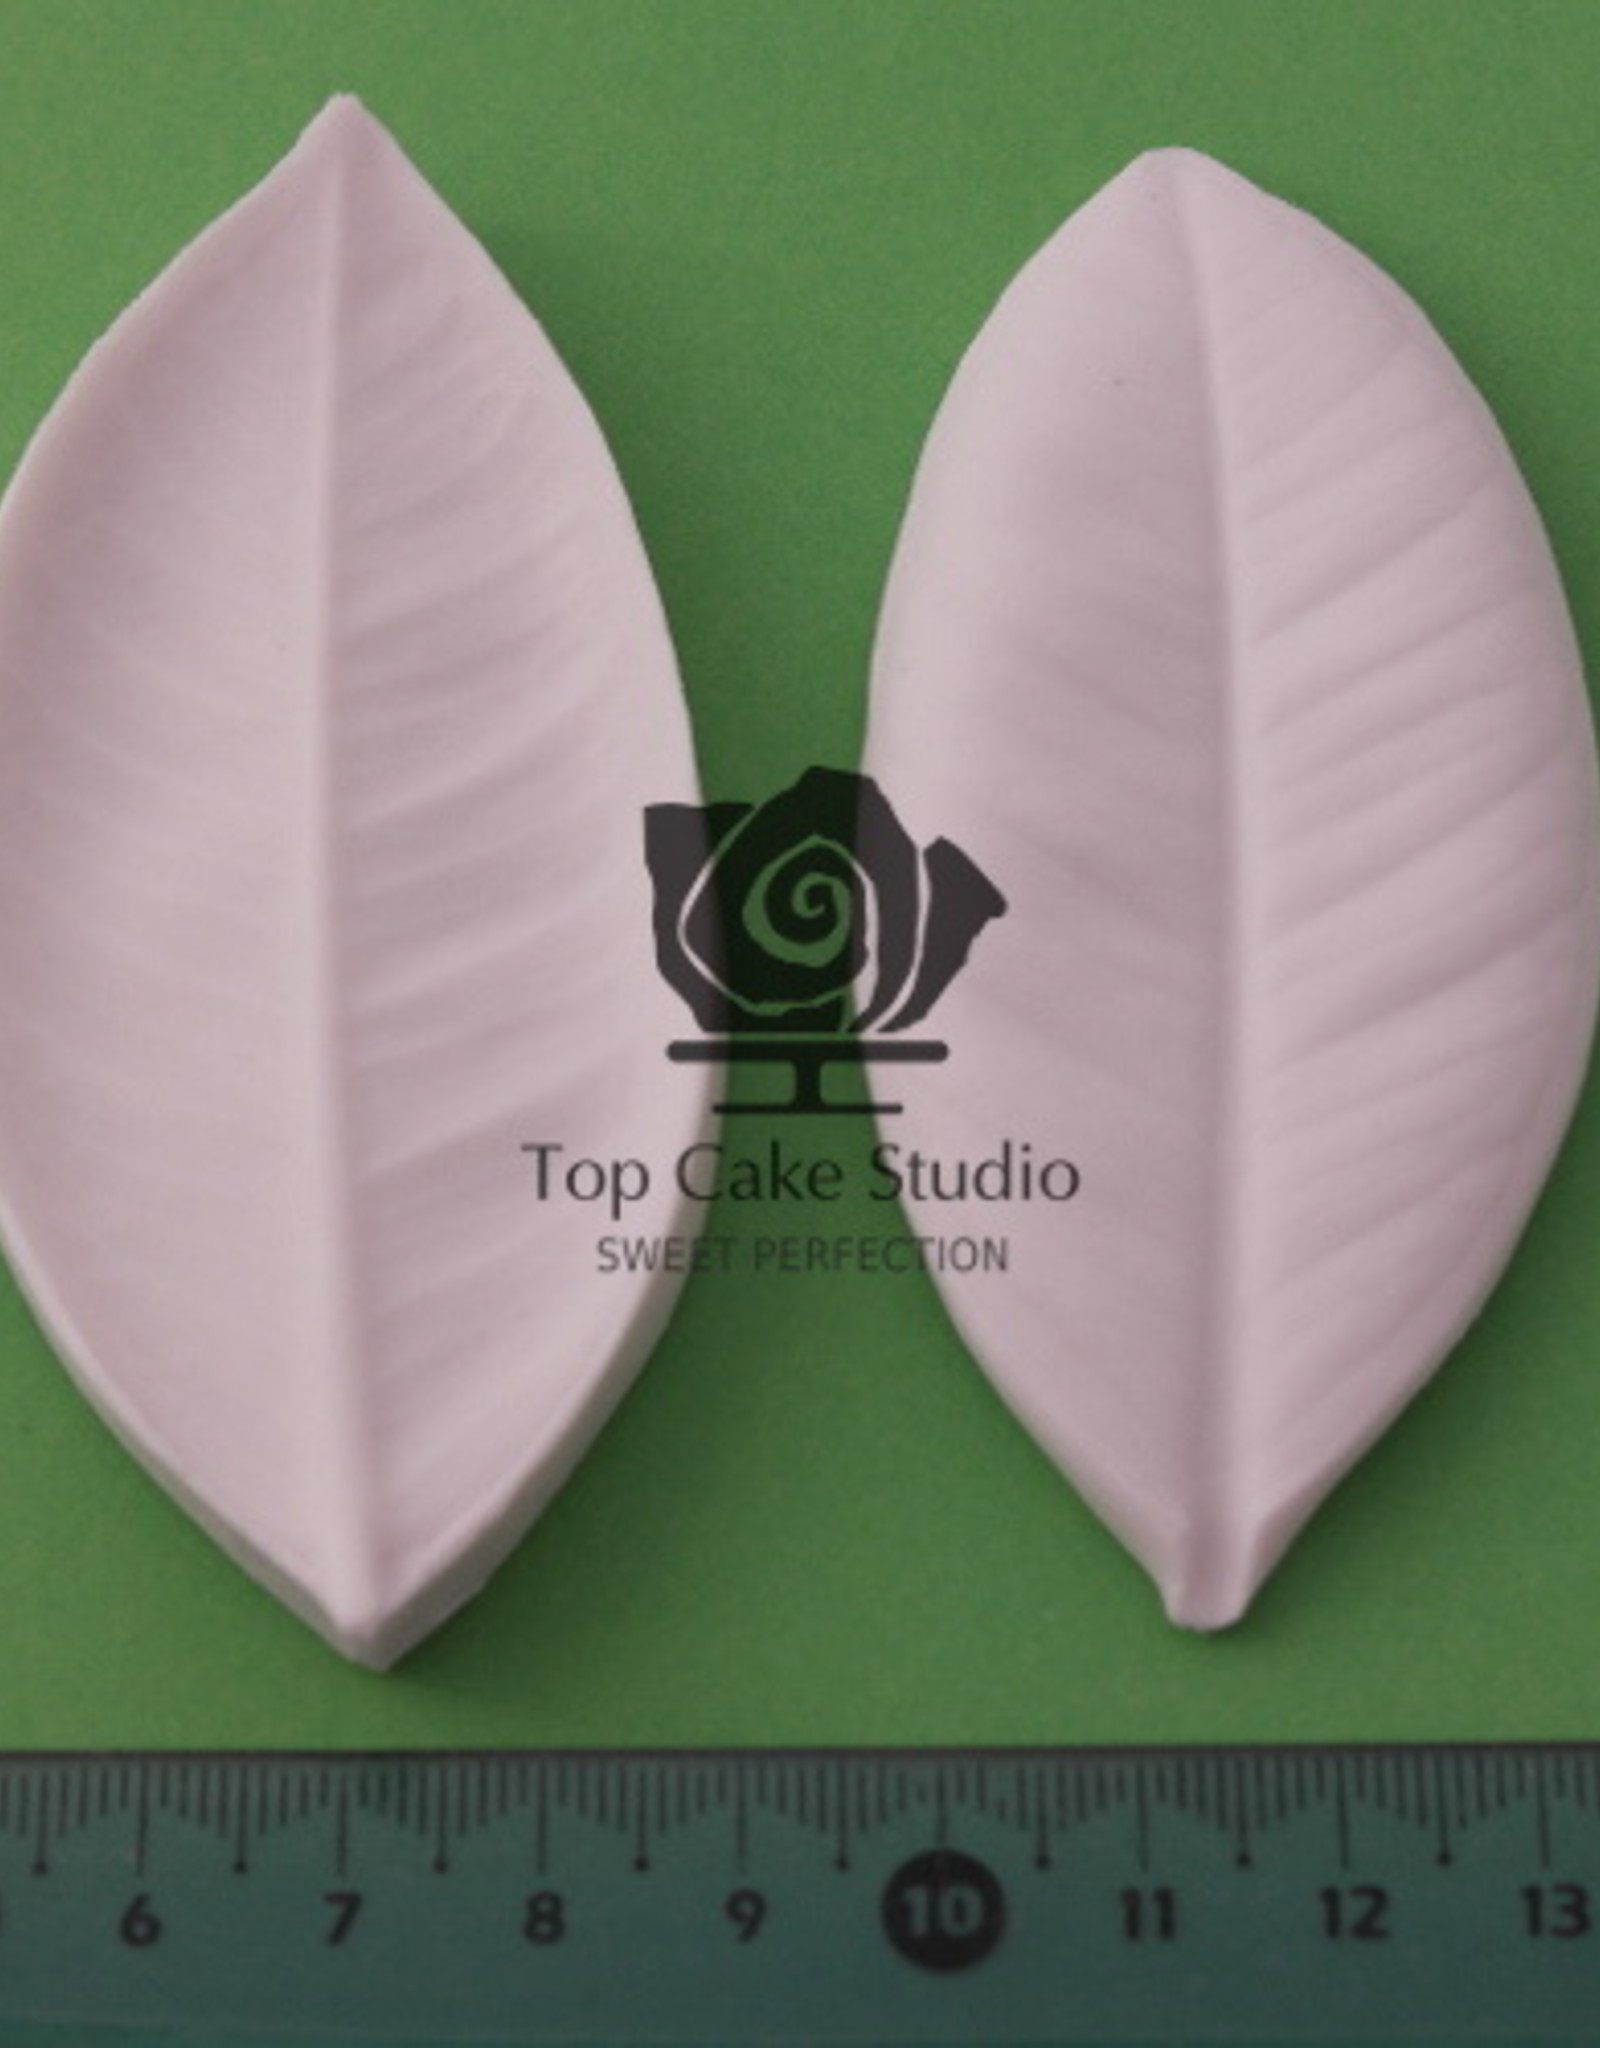 TopCakeStudio TopCakeStudio Veiner Gardenia, Stefanotis, Plumeria Leaf L